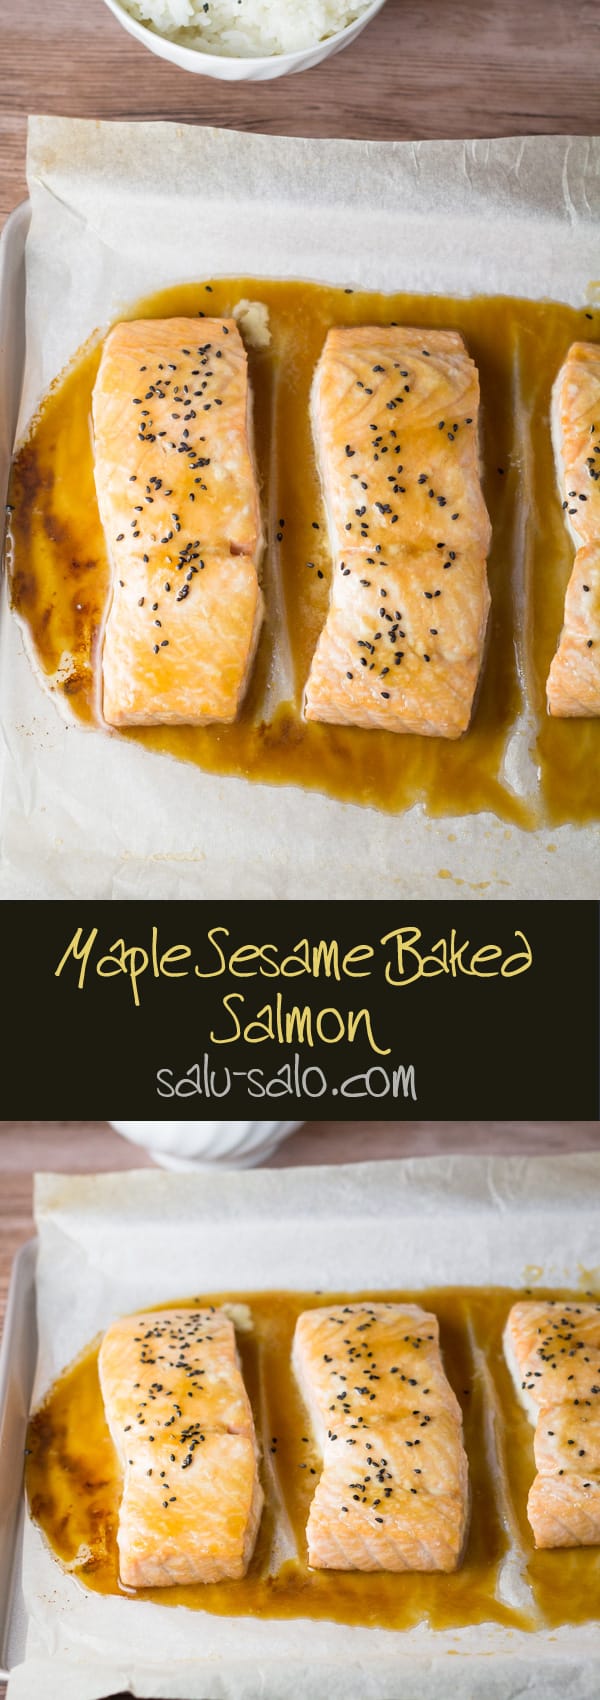 Maple Sesame Baked Salmon